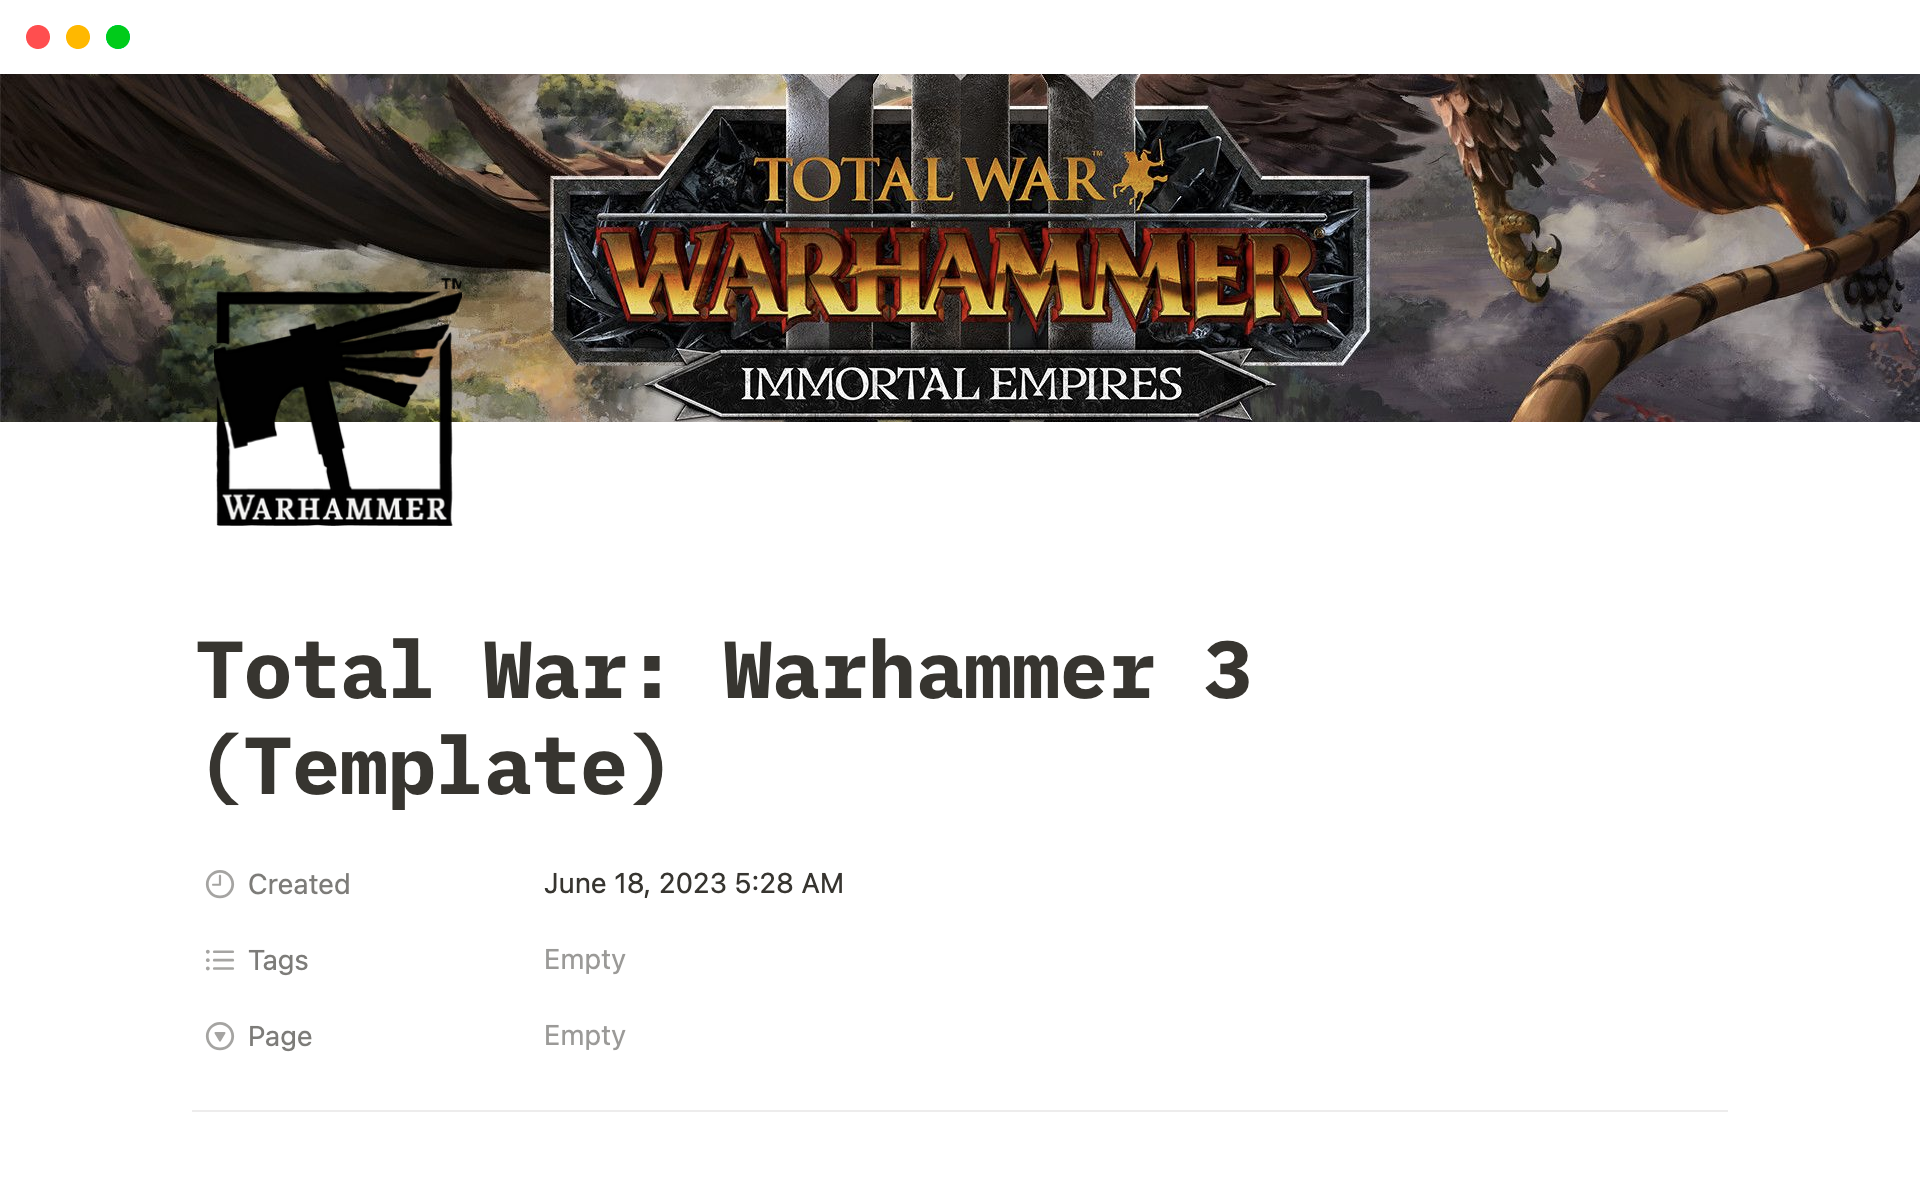 Eine Vorlagenvorschau für Warhammer 3 Total War Faction Tracker